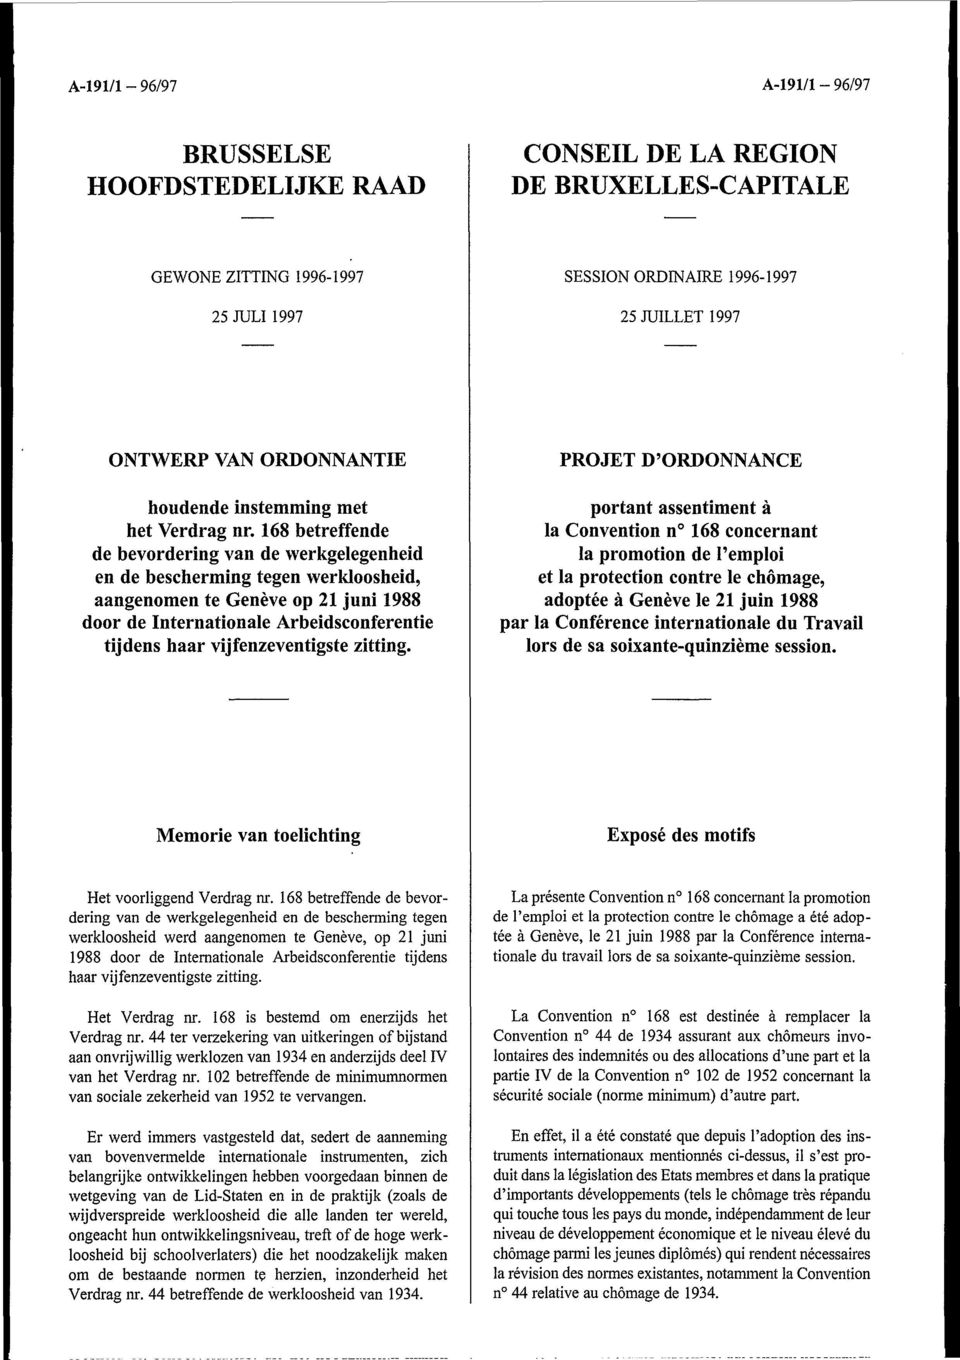 168 betreffende de bevordering van de werkgelegenheid en de bescherming tegen werkloosheid, aangenomen te Genève op 21 juni 1988 door de Internationale Arbeidsconferentie tijdens haar